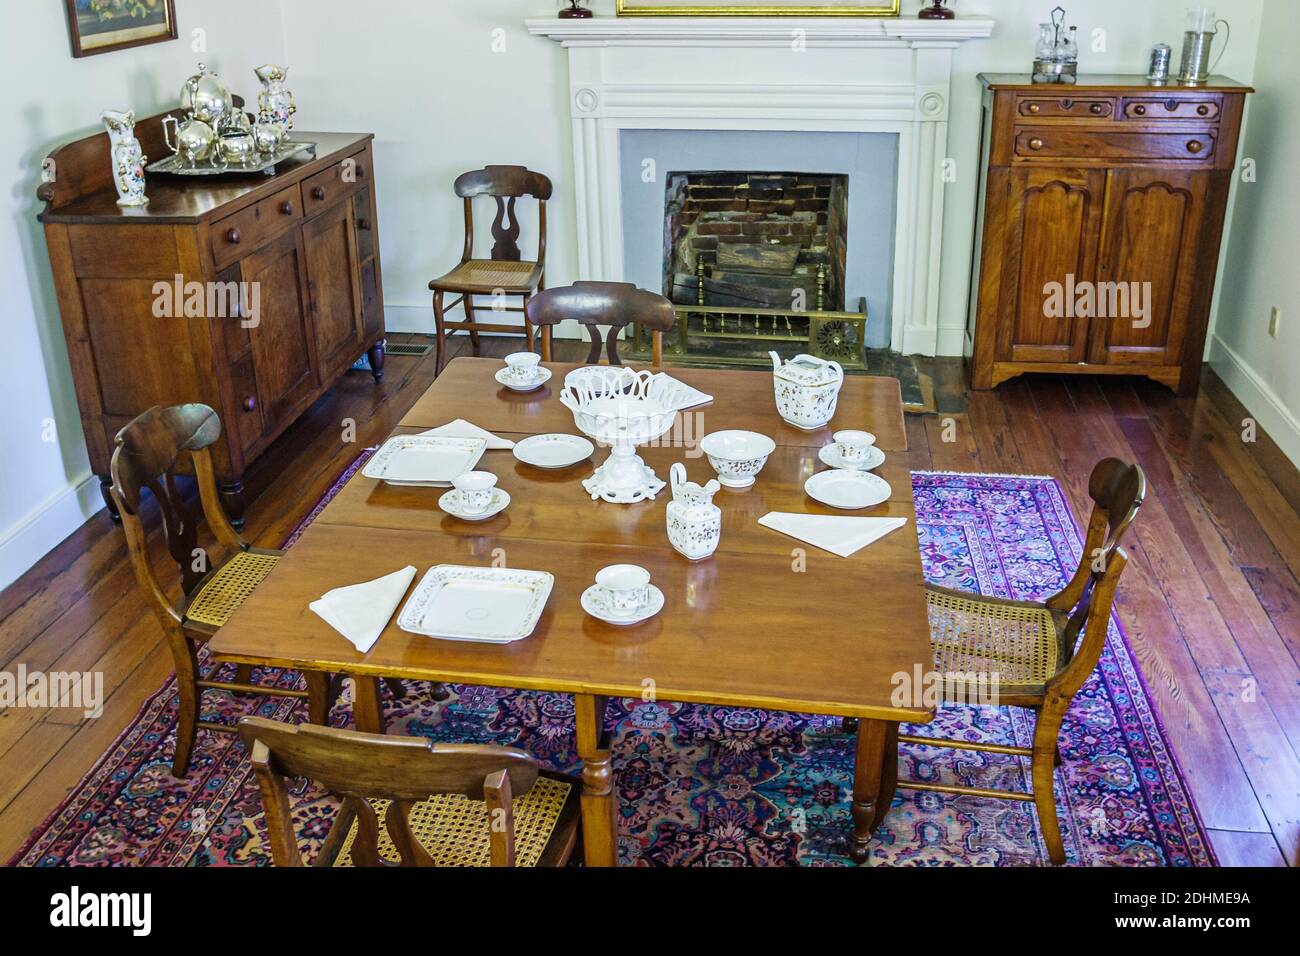 Alabama Tuscumbia Ivy Green Helen Keller Geburtsort, historisches Haus taub blind der Wundertäter, Esszimmer Tisch Einstellung Möbel Inneneinrichtung ins Stockfoto